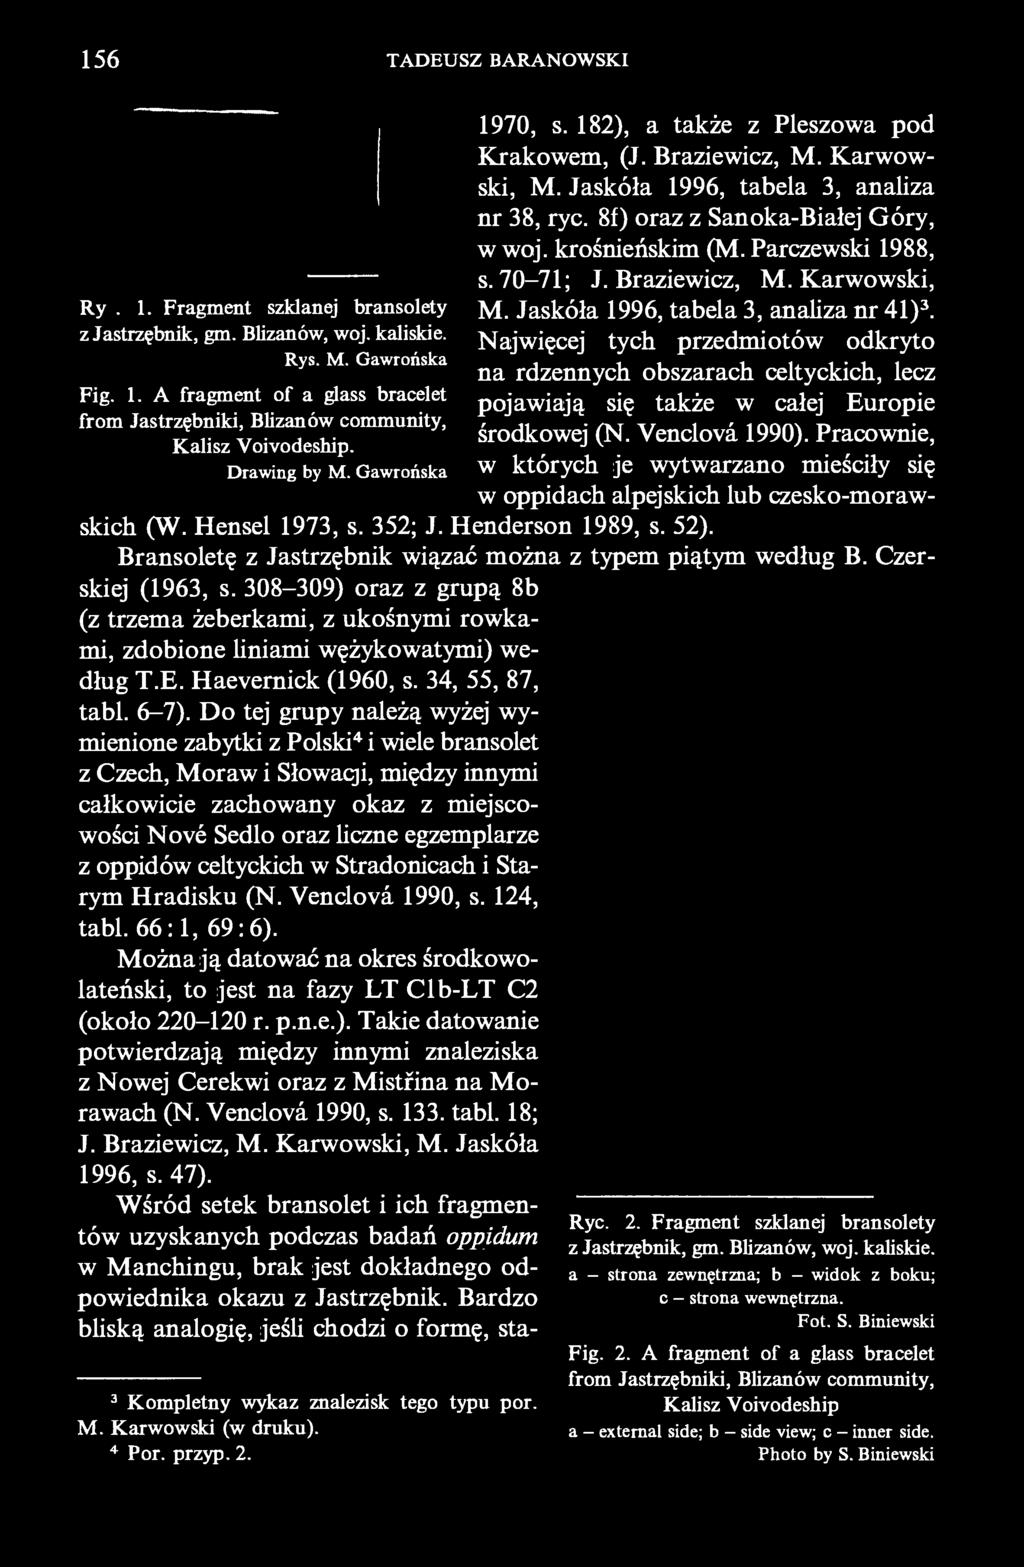 krośnieńskim (M. Parczewski 1988, s. 70-71; J. Braziewicz, M.Karwowski, M. Jaskóła 1996, tabela 3, analiza nr 41) 3.